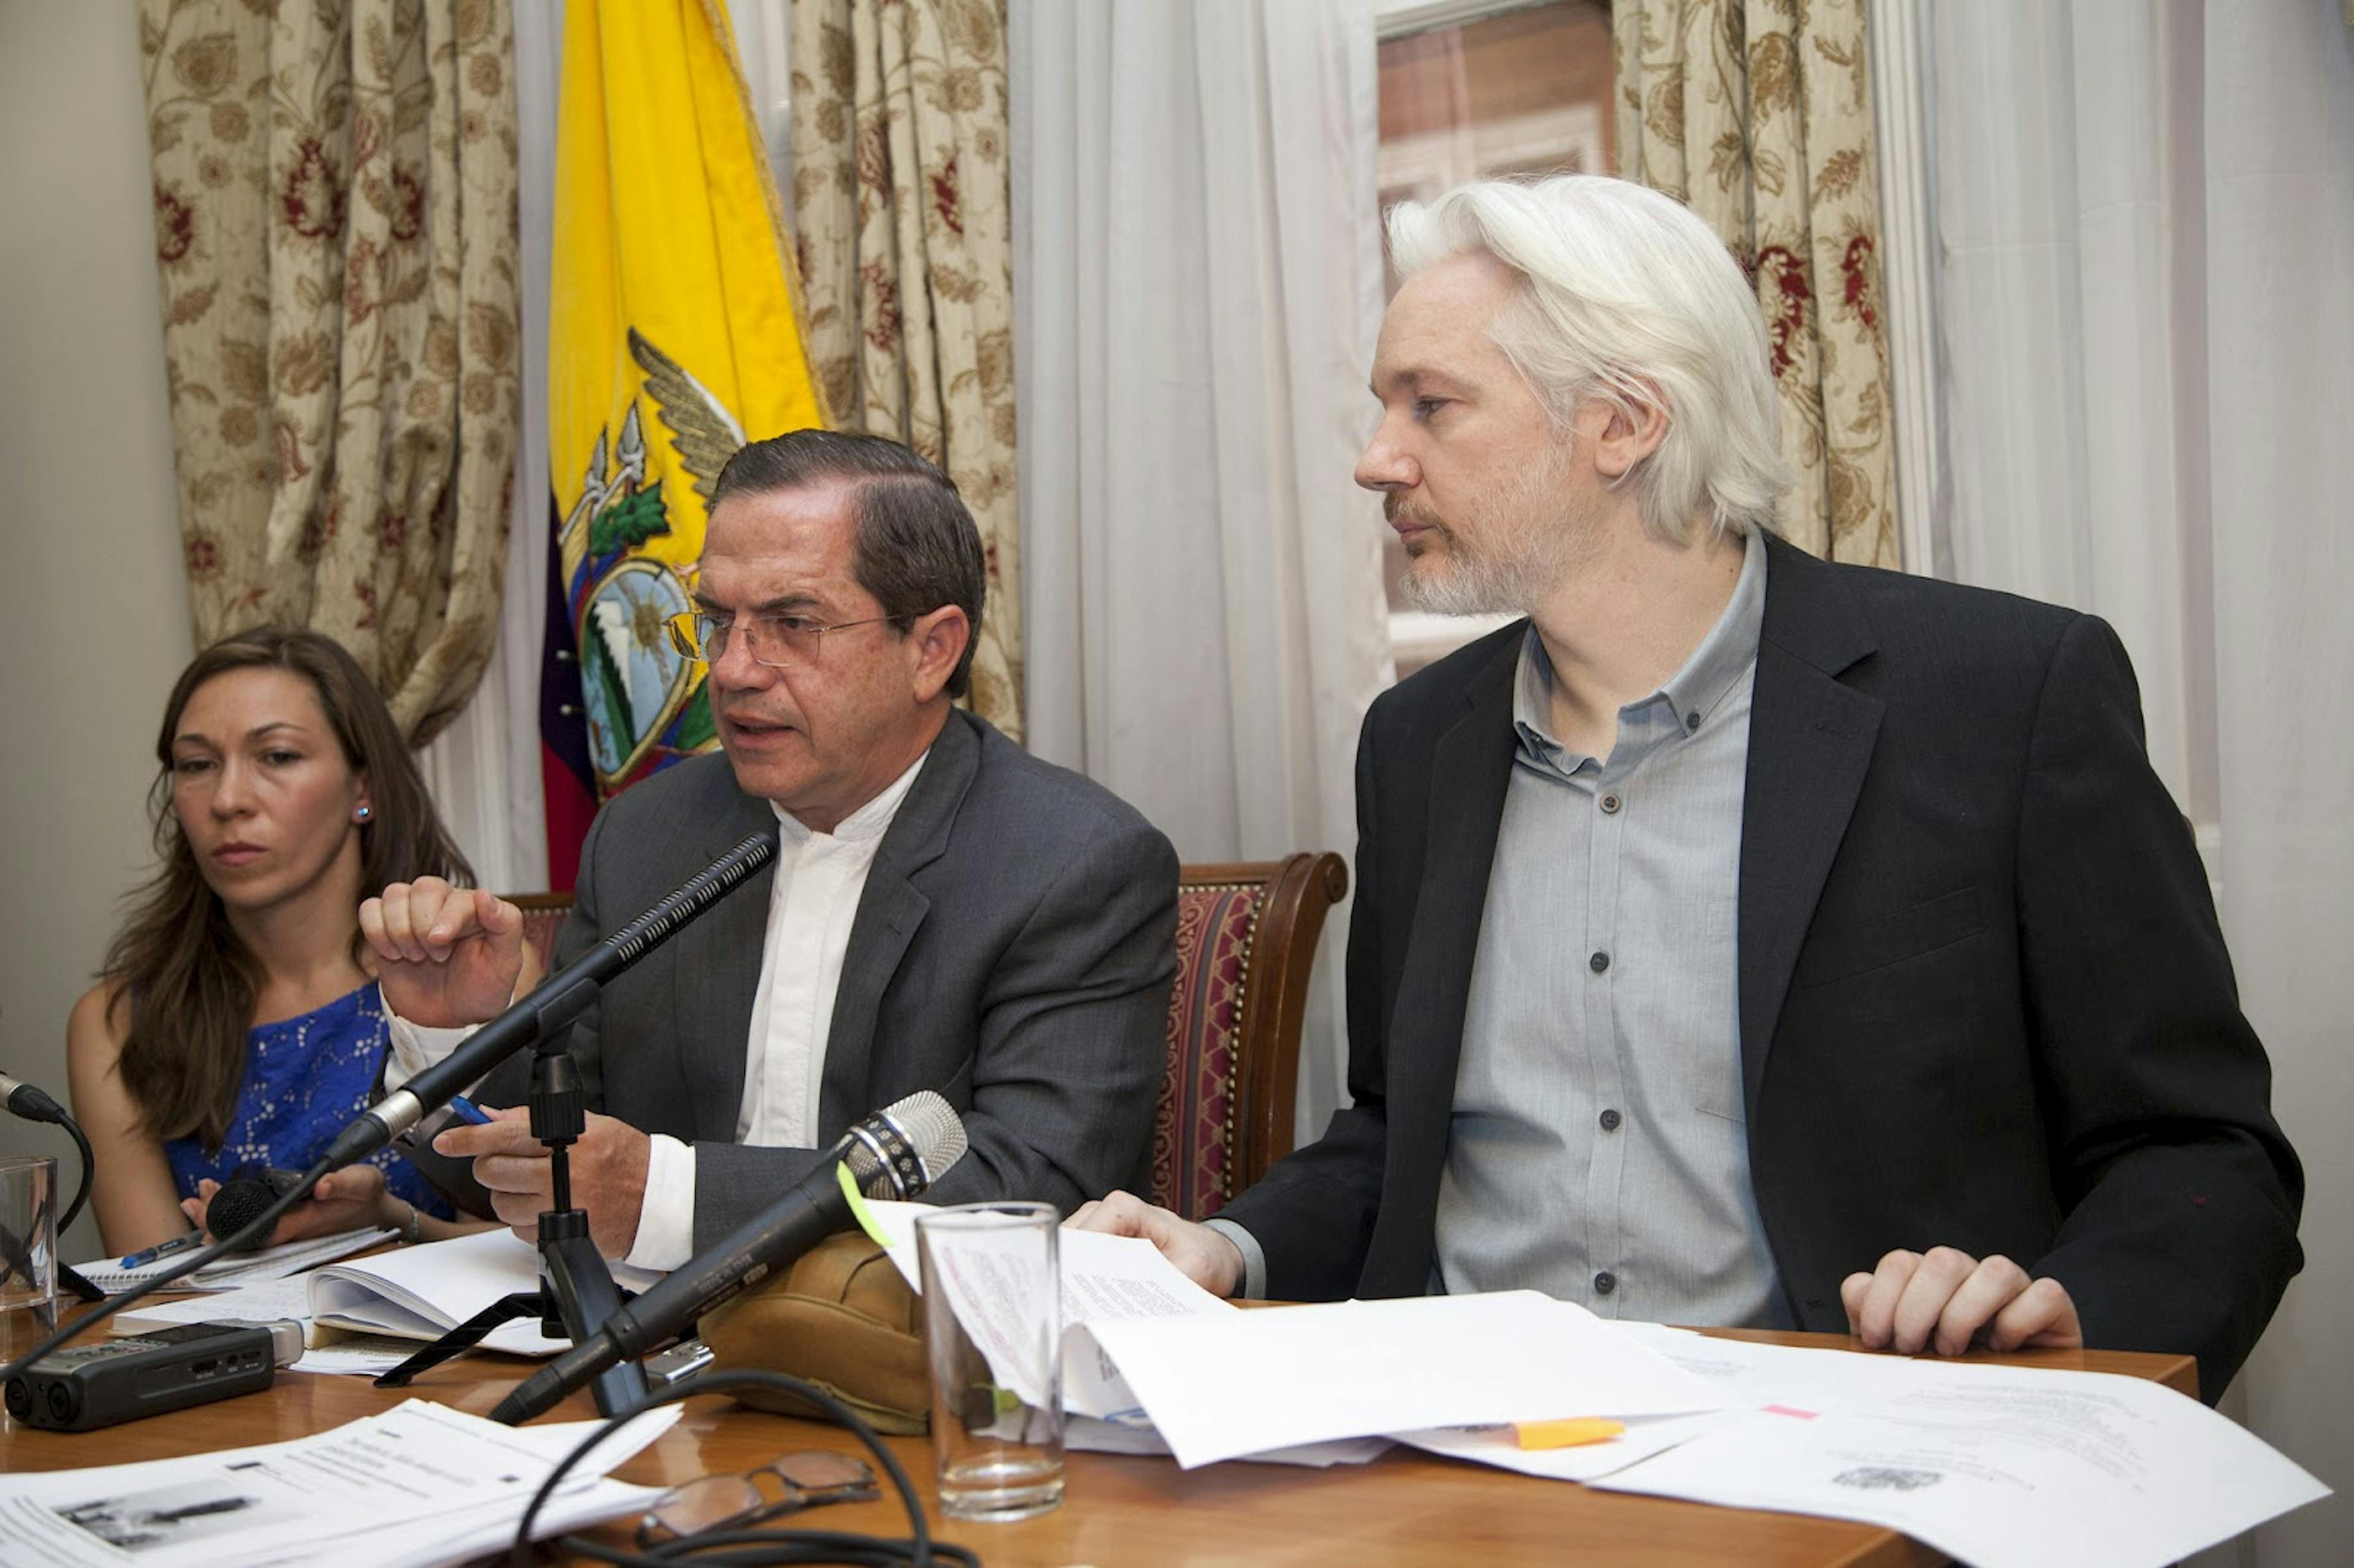 阿桑奇在英国厄瓜多尔大使馆参加新闻发布会（2014 年）。图片来源：Cancillería de Ecuador / Flickr。